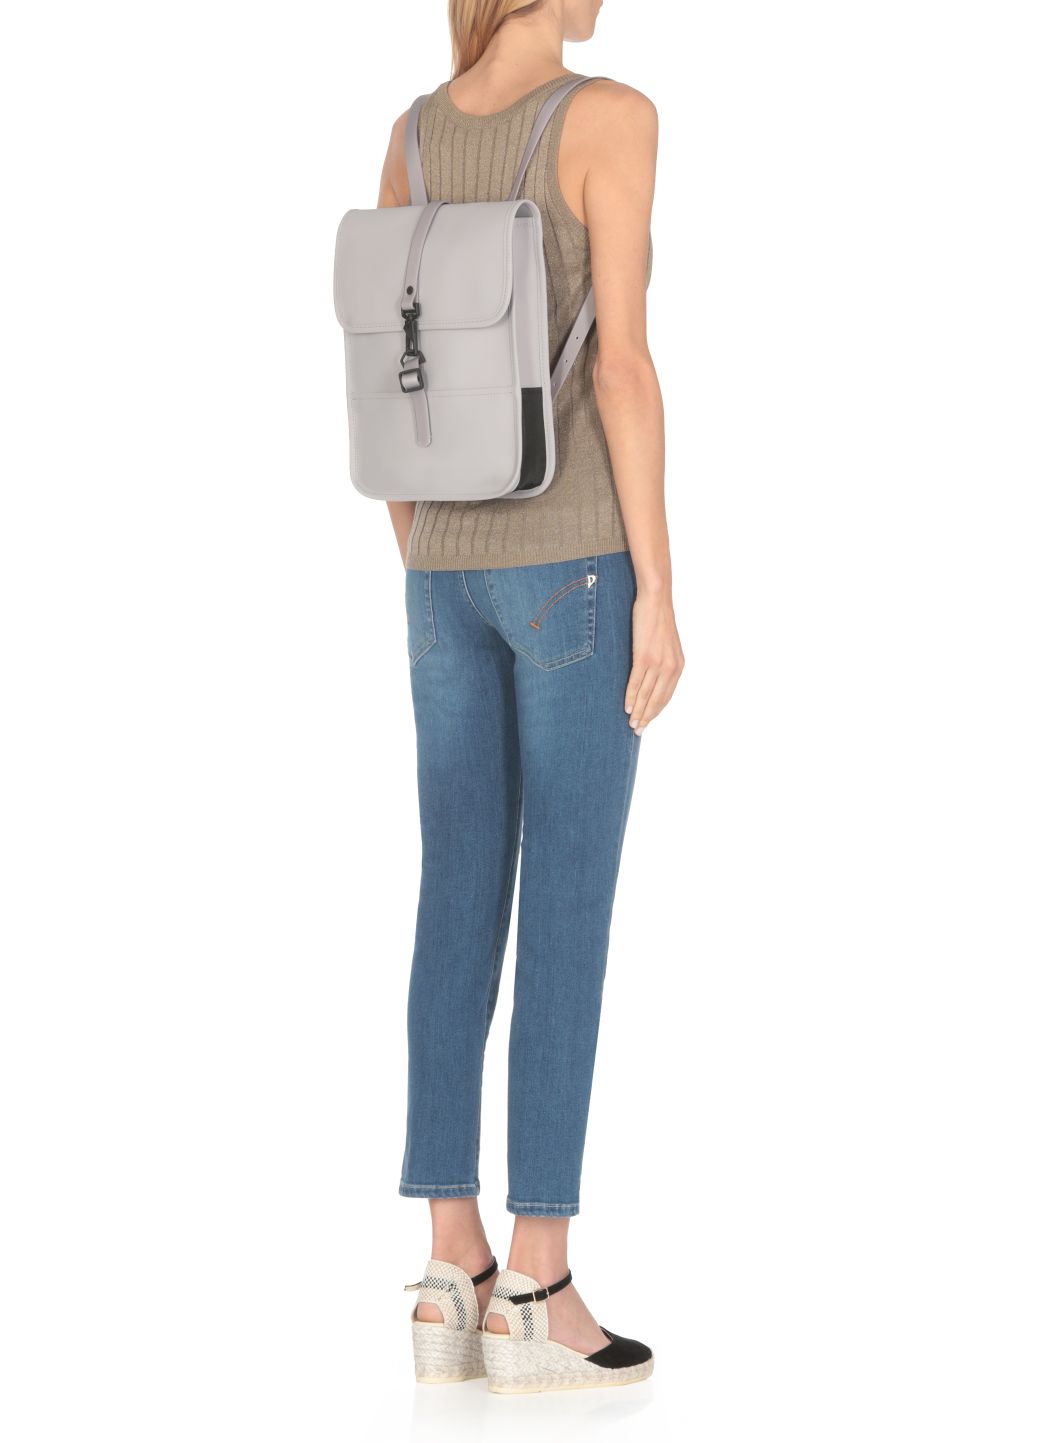 Micro W3 backpack